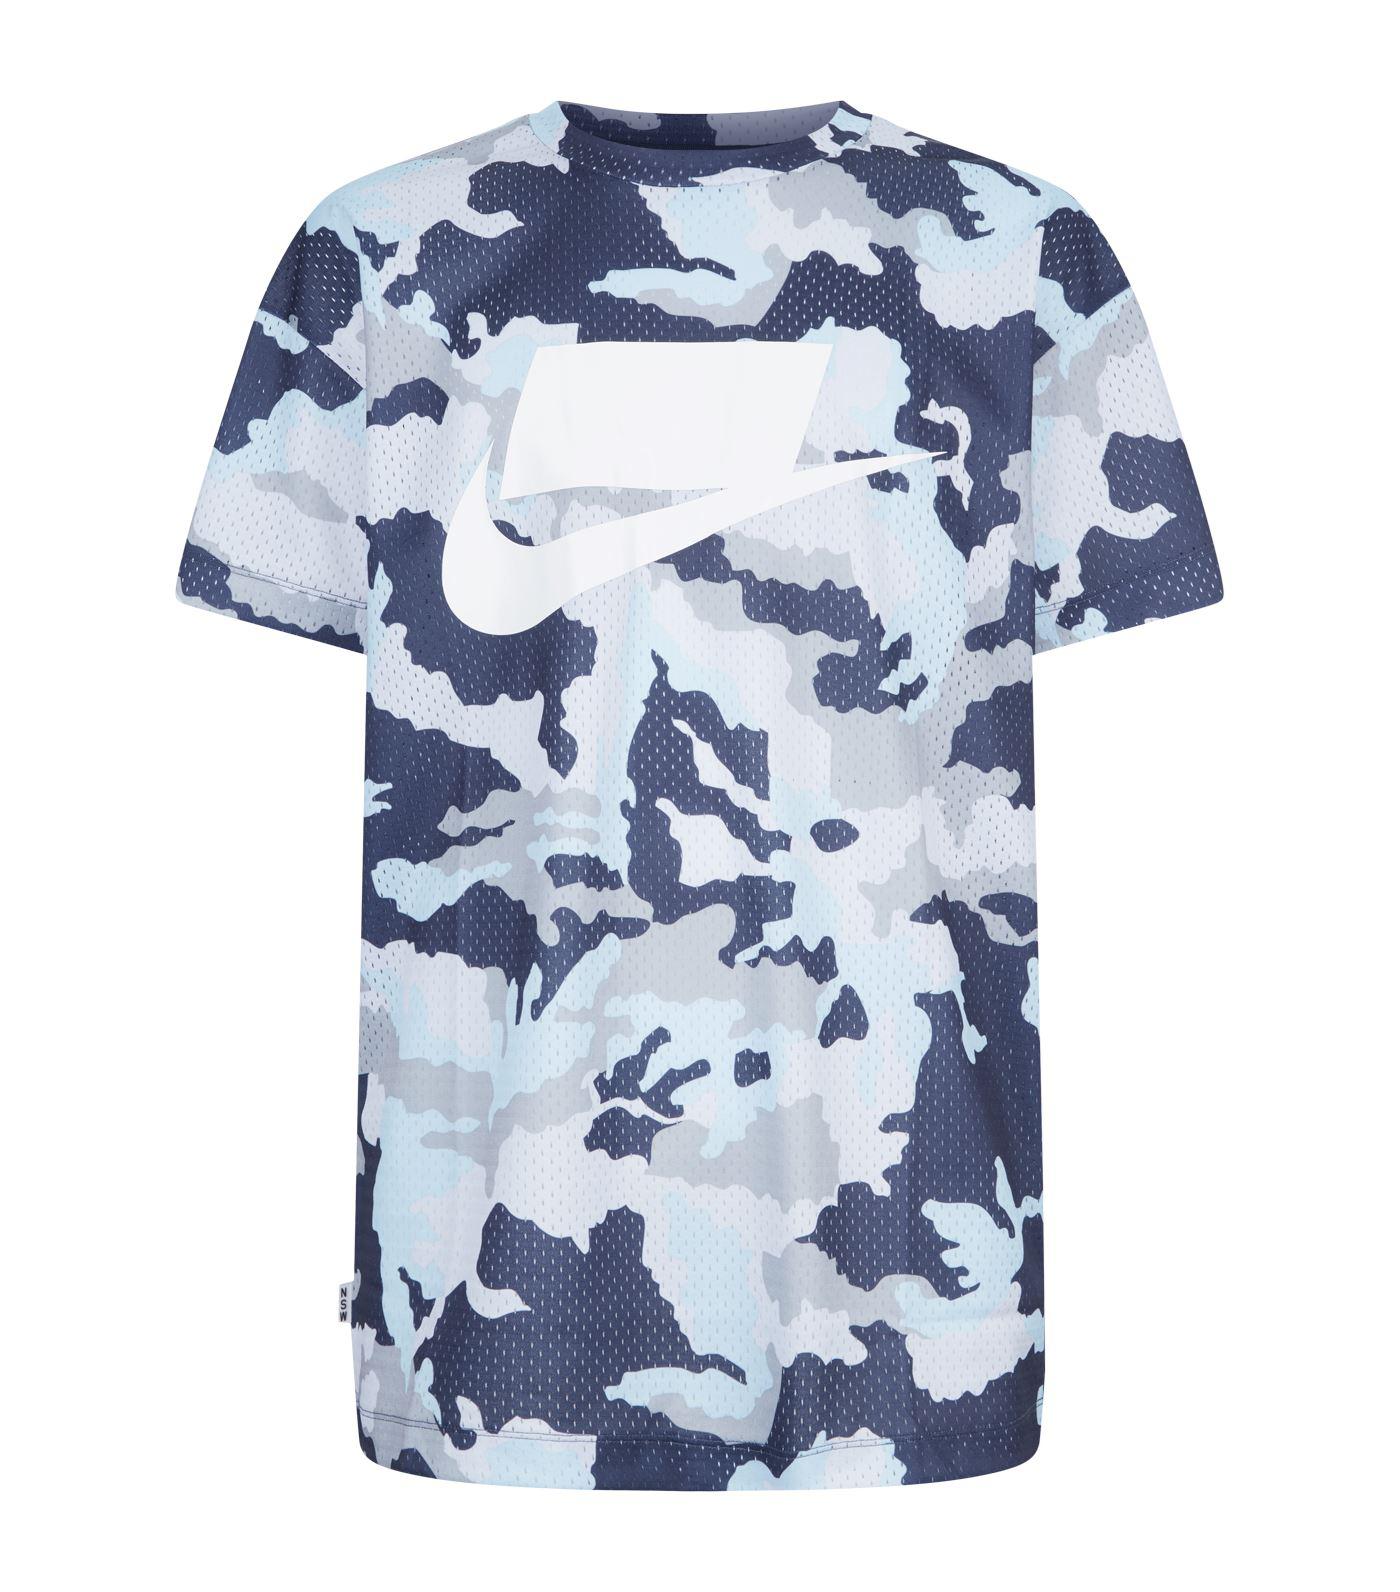 Nike Sportswear Nsw Camouflage T-shirt in Blue for Men - Lyst